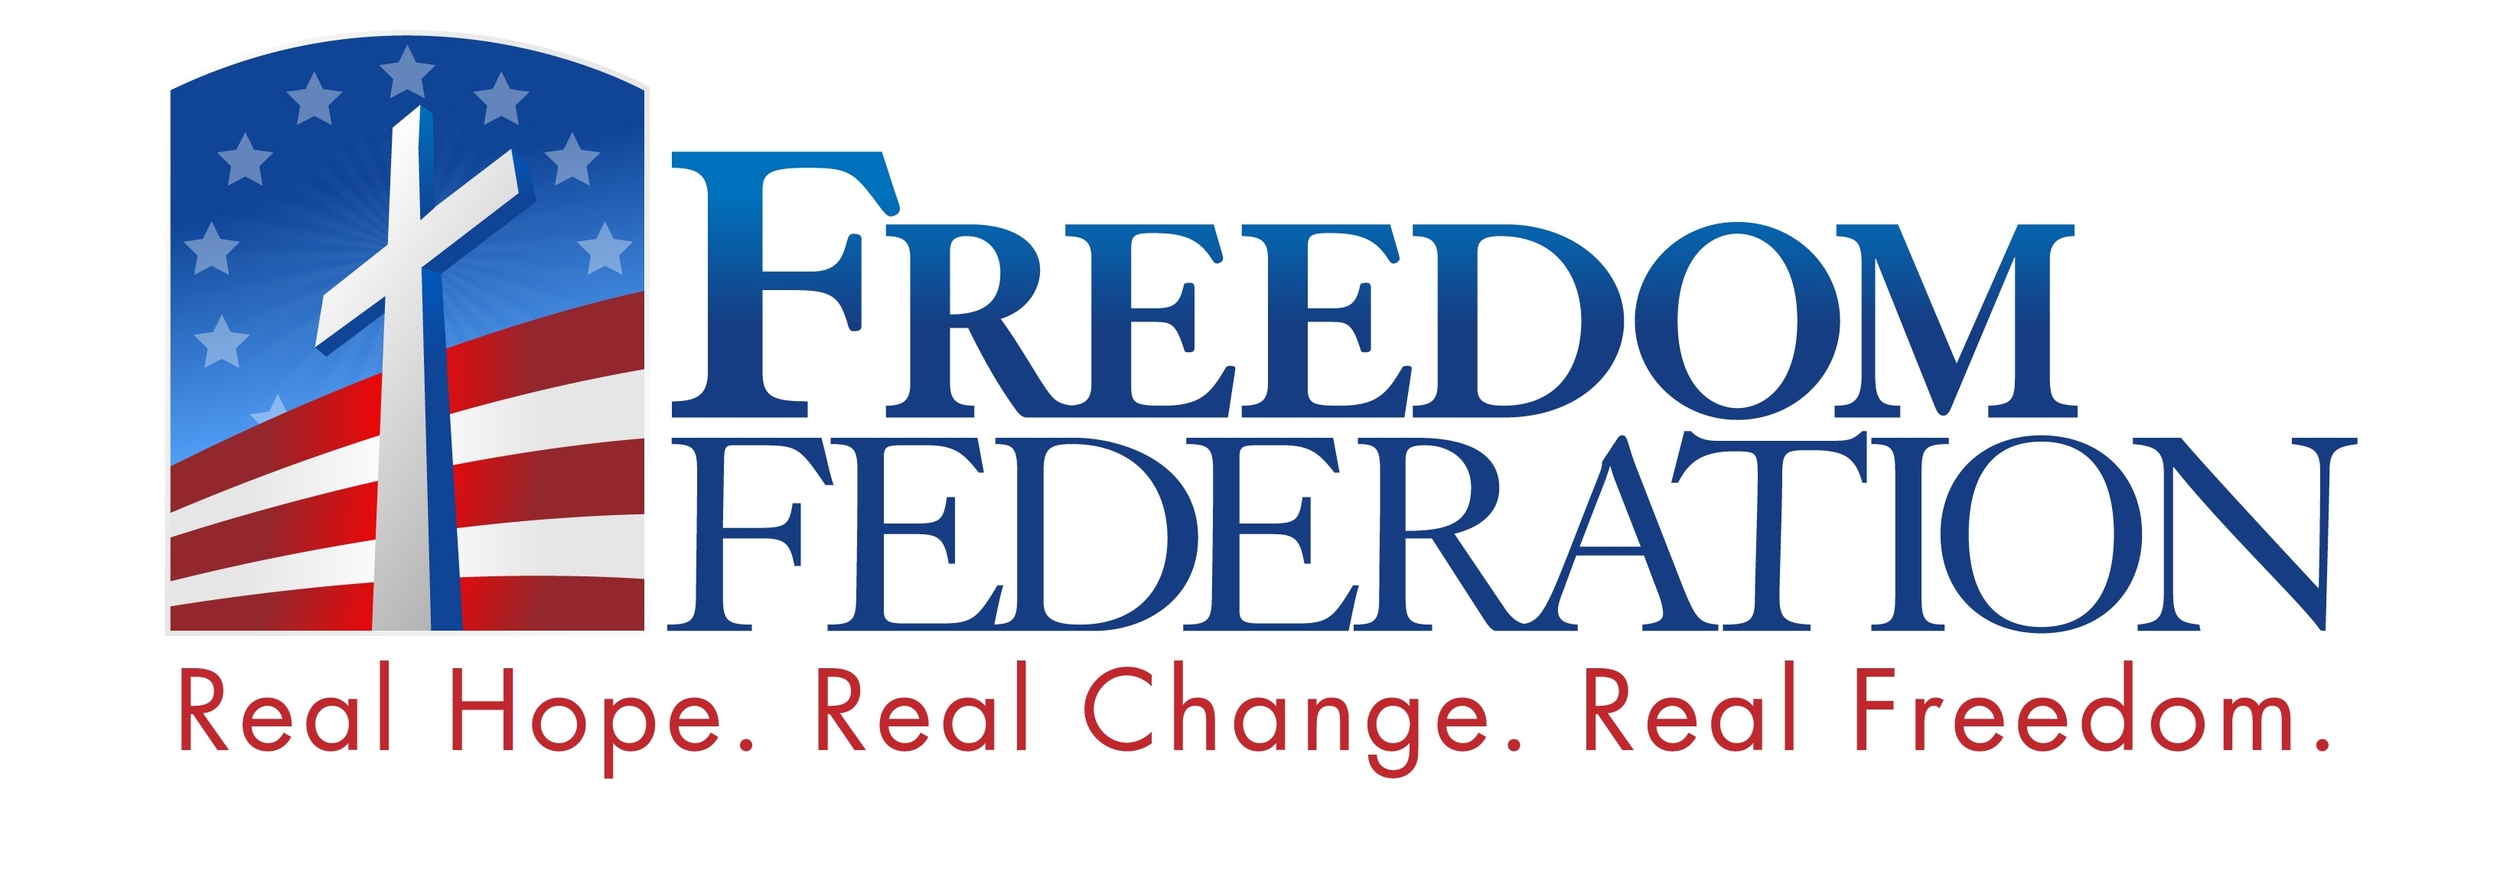 Freedom Federation Logo.jpg